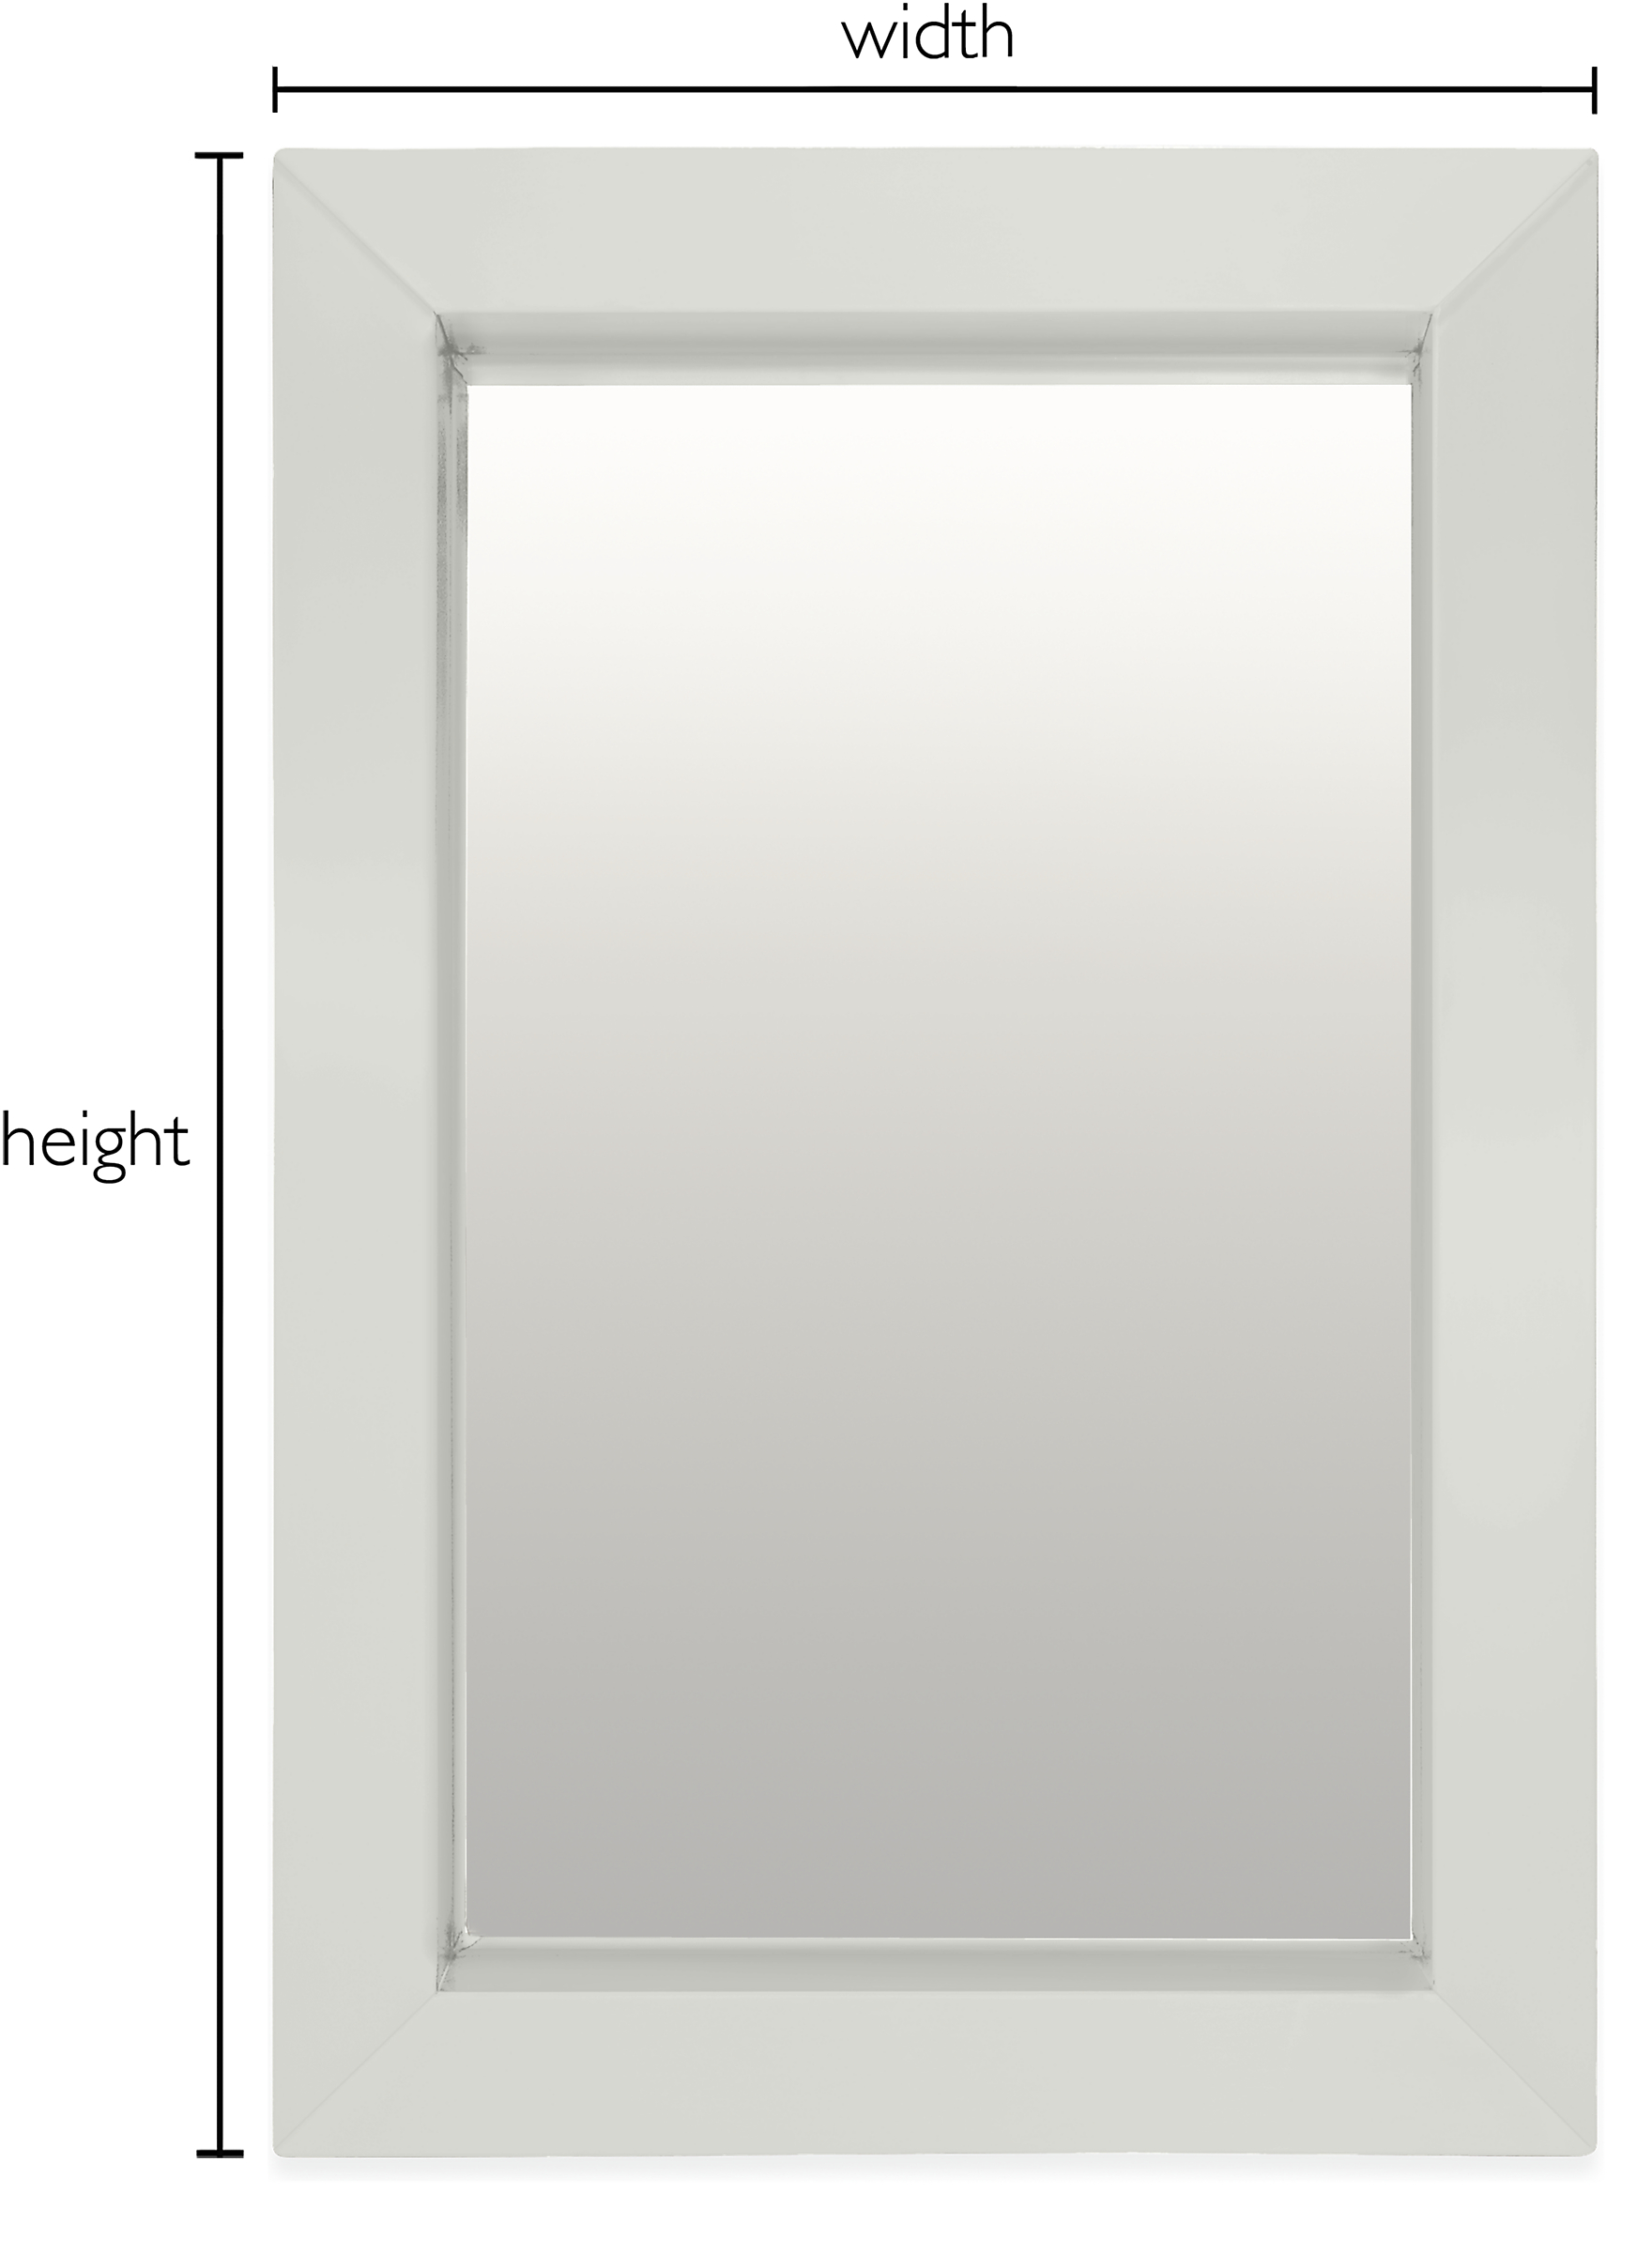 Industry Custom Wall Mirror for Bathroom